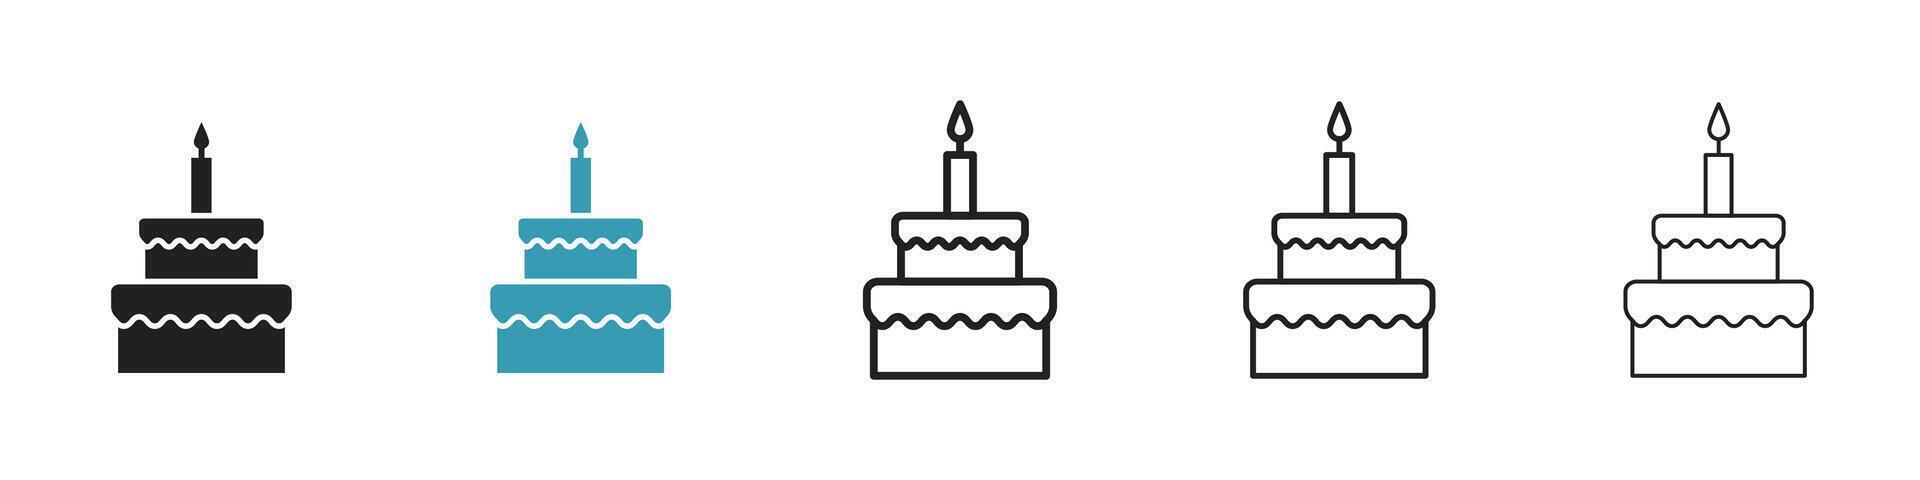 Birthday cake icon vector